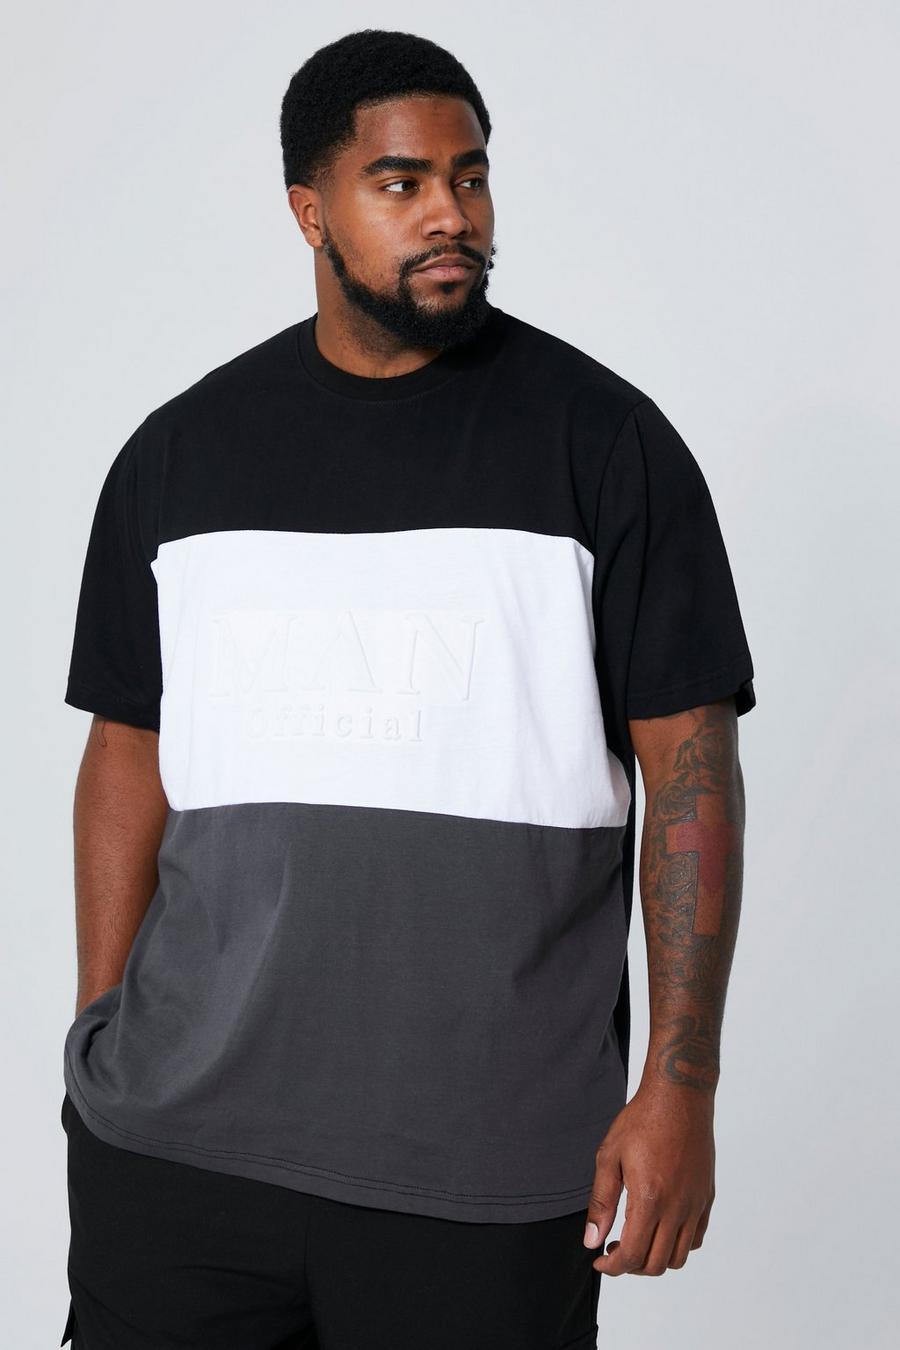 T-shirt Plus Size Man a blocchi di colore con caratteri romani incisi, Black nero